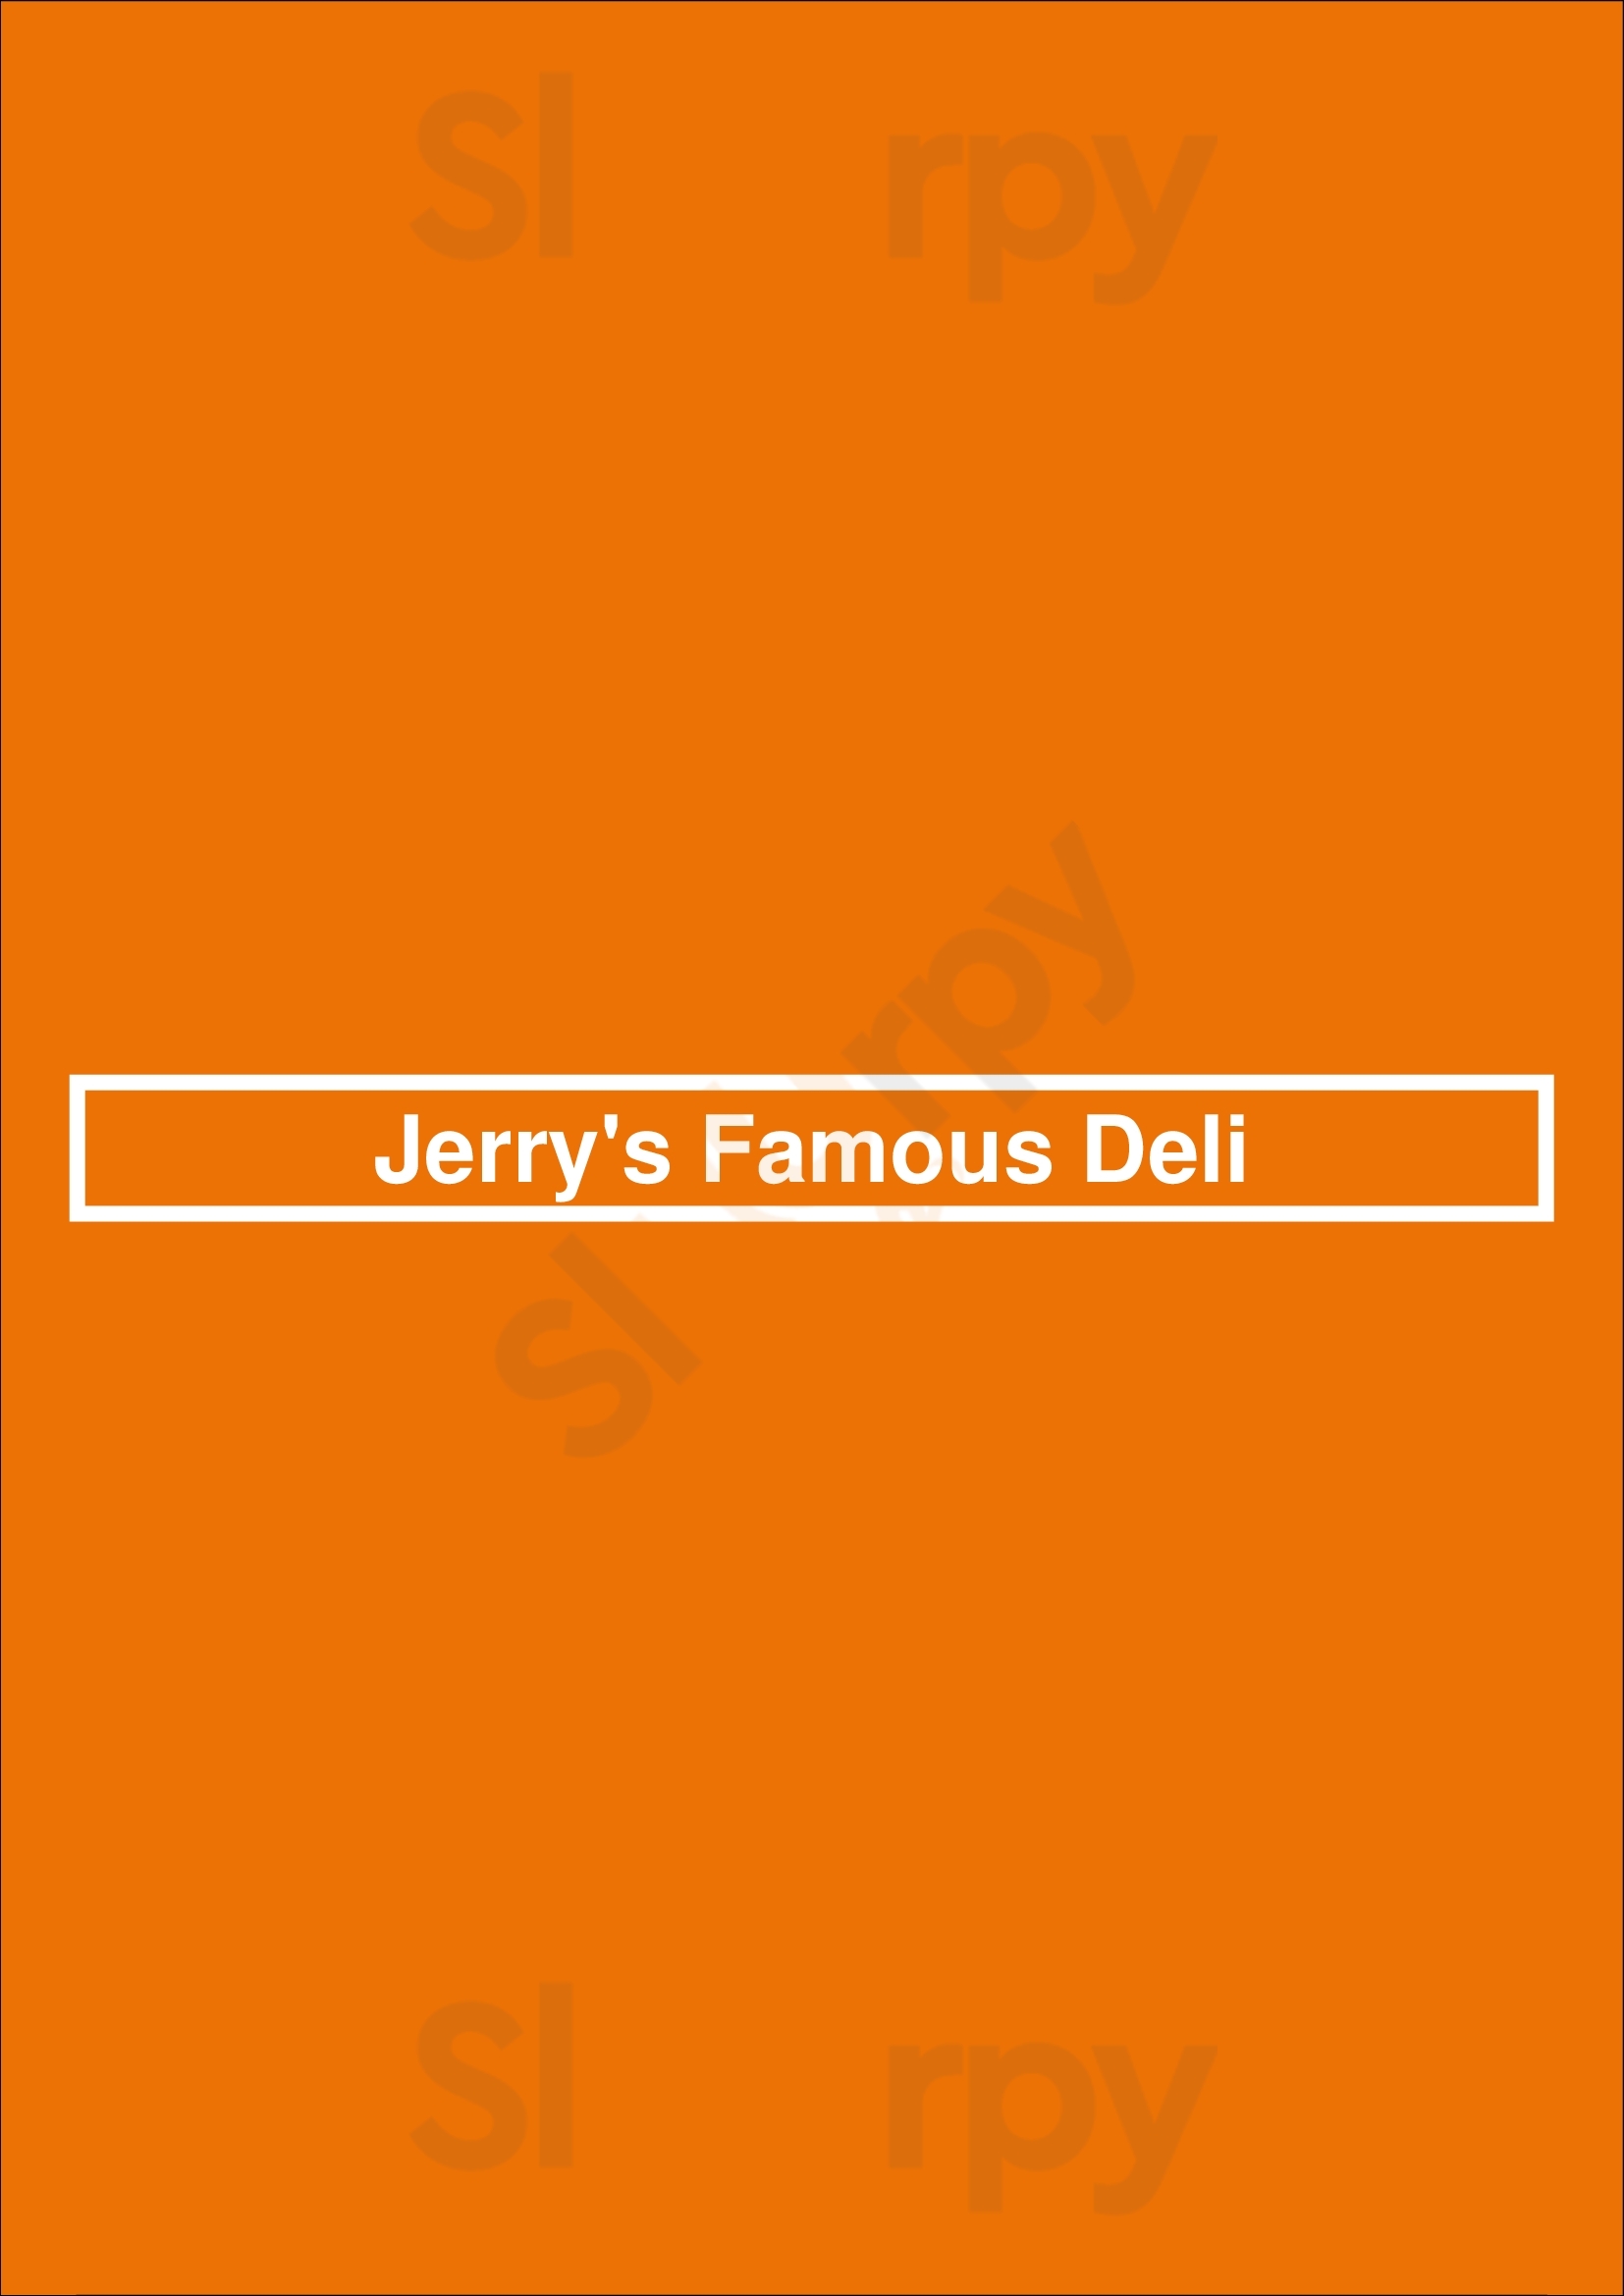 Jerry's Famous Deli Los Angeles Menu - 1